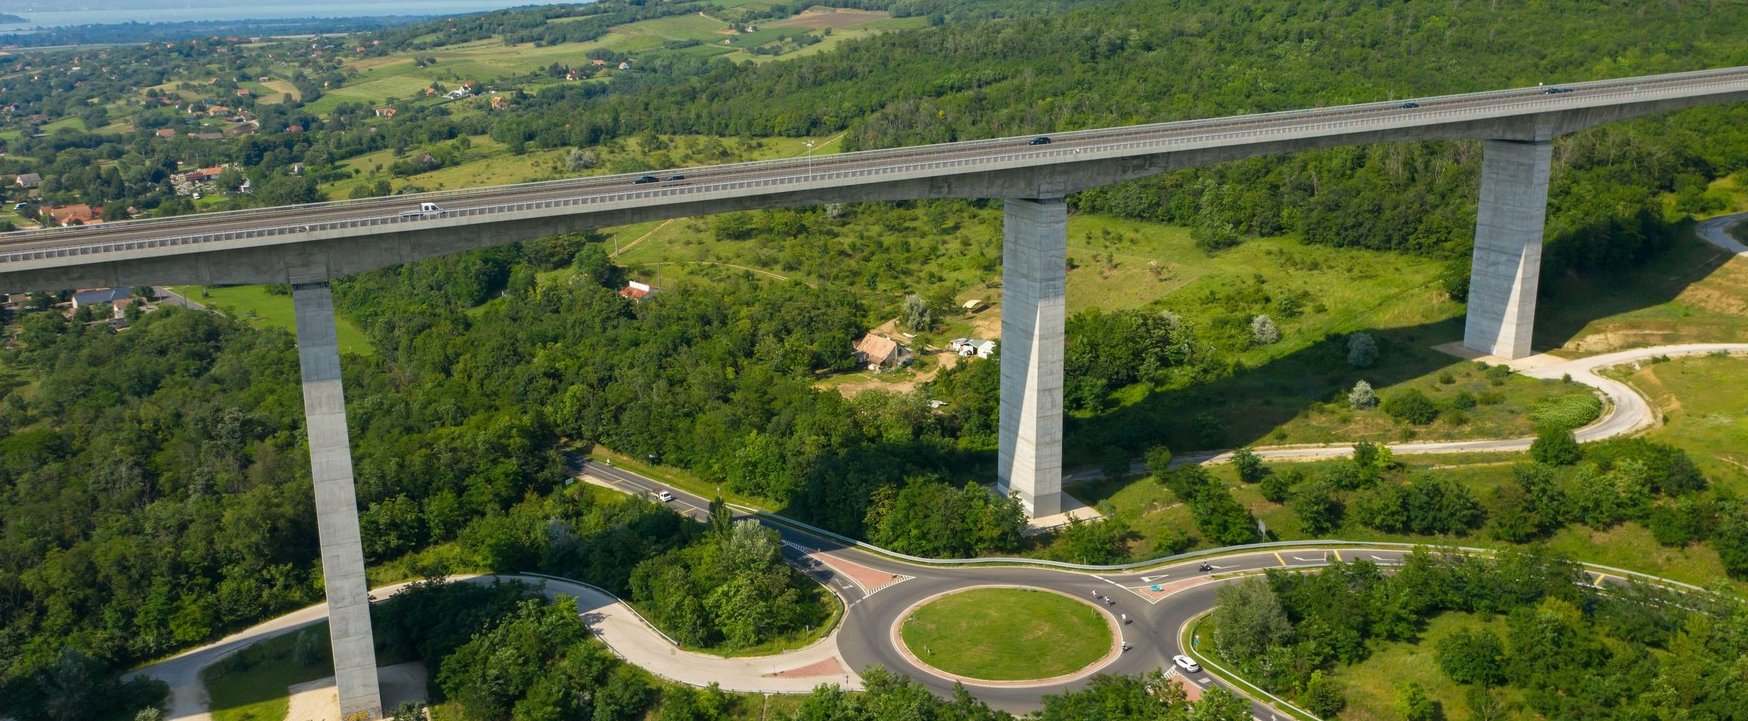 Ez Magyarország leghosszabb hídja, amelynek megépítése már a maga korában is bődületes összegbe került